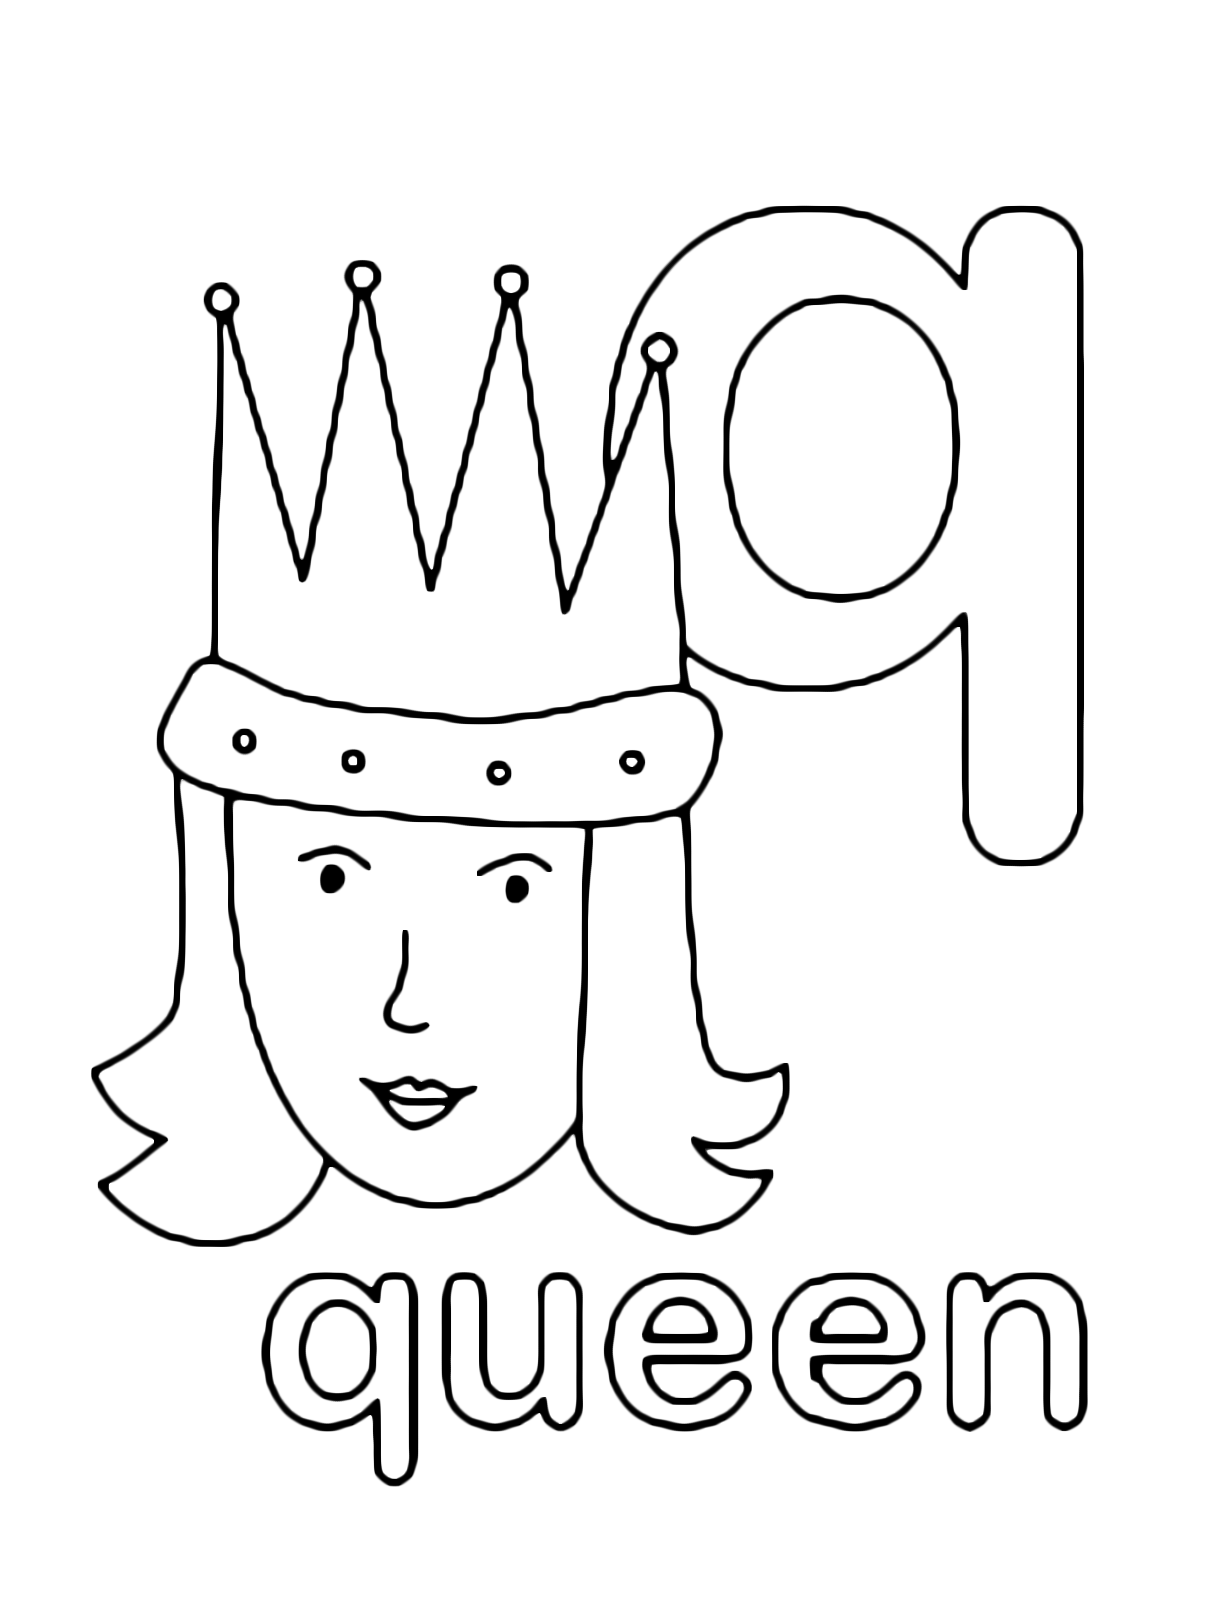 Lettere e numeri - Lettera q in stampato minuscolo di queen (regina) in Inglese